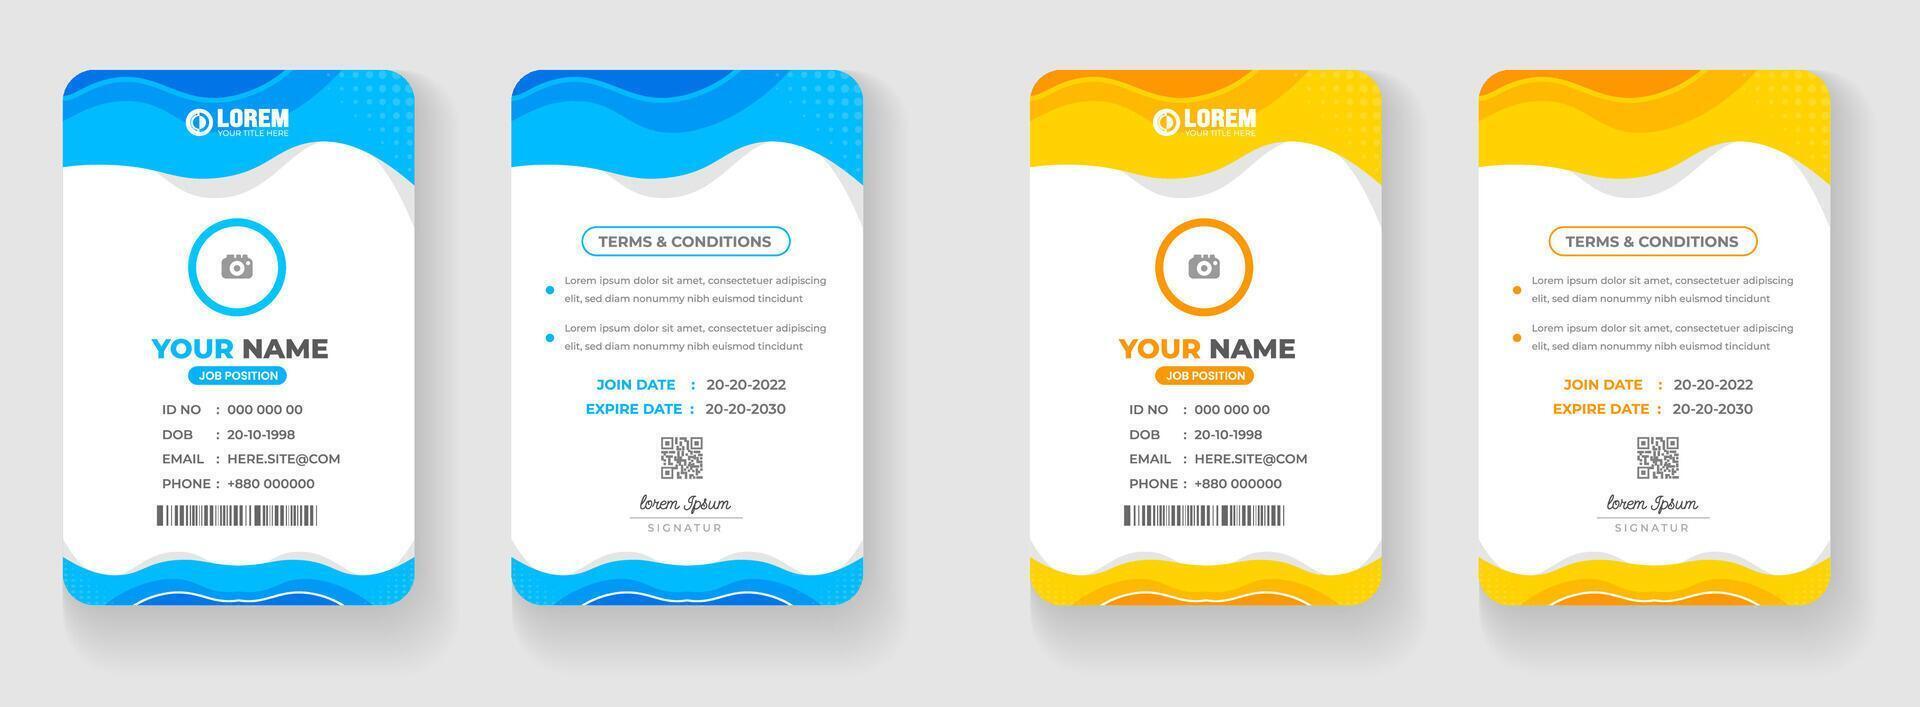 corporativo negocio oficina carné de identidad tarjeta diseño conjunto con azul y amarillo color. vector